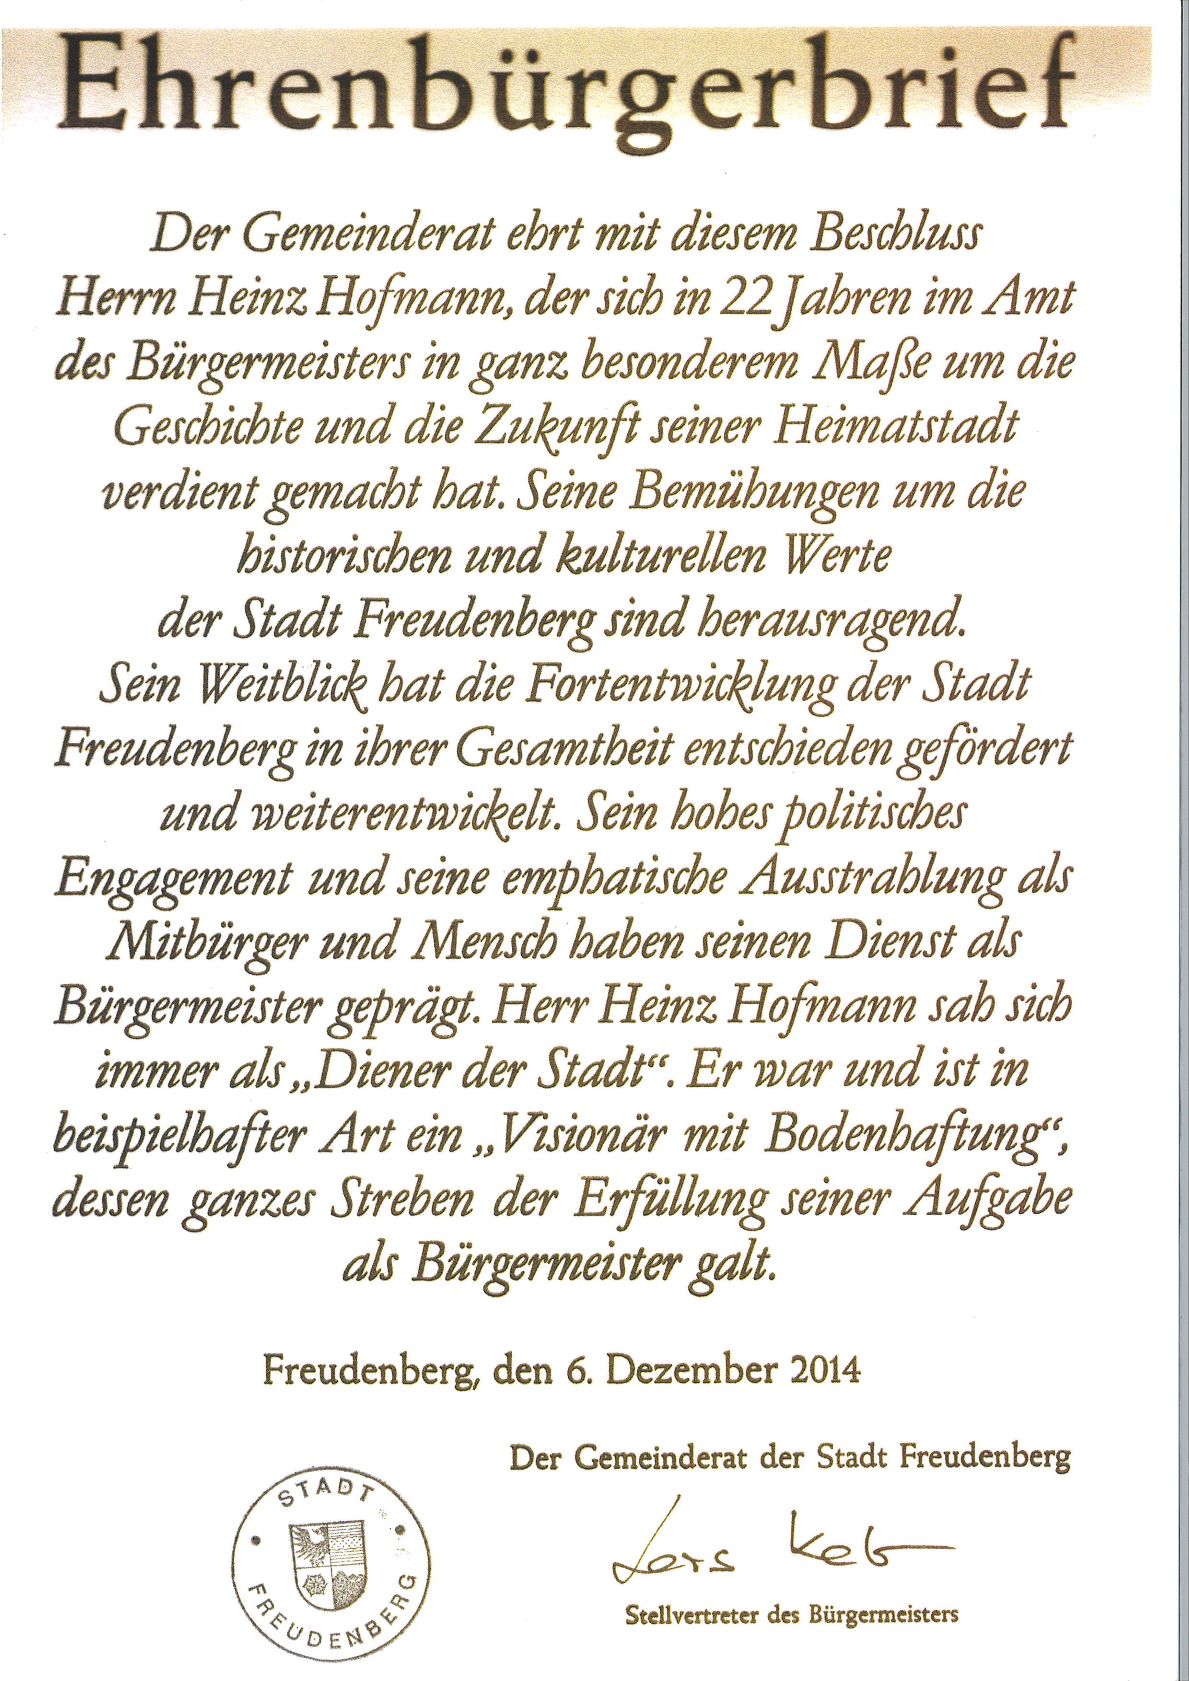  Urkunde - copyr. F. Hofmann 